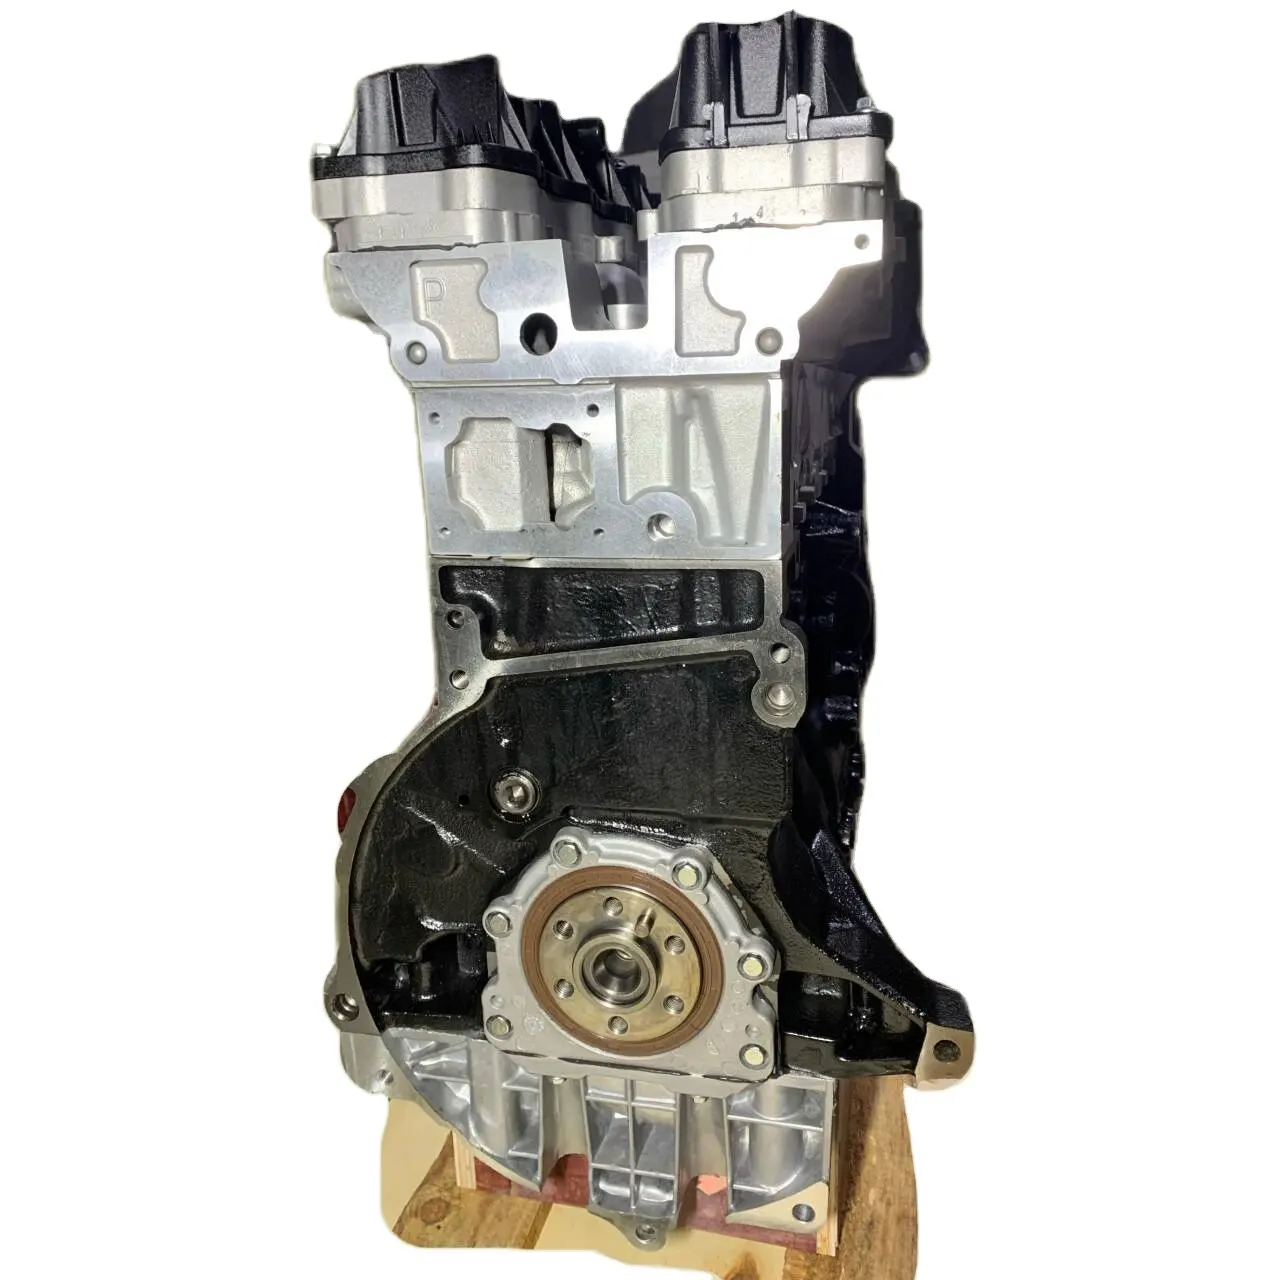 Ucuz fiyat toptan Peugeot motor 1.6L Peugeot için 4 silindir oto motor